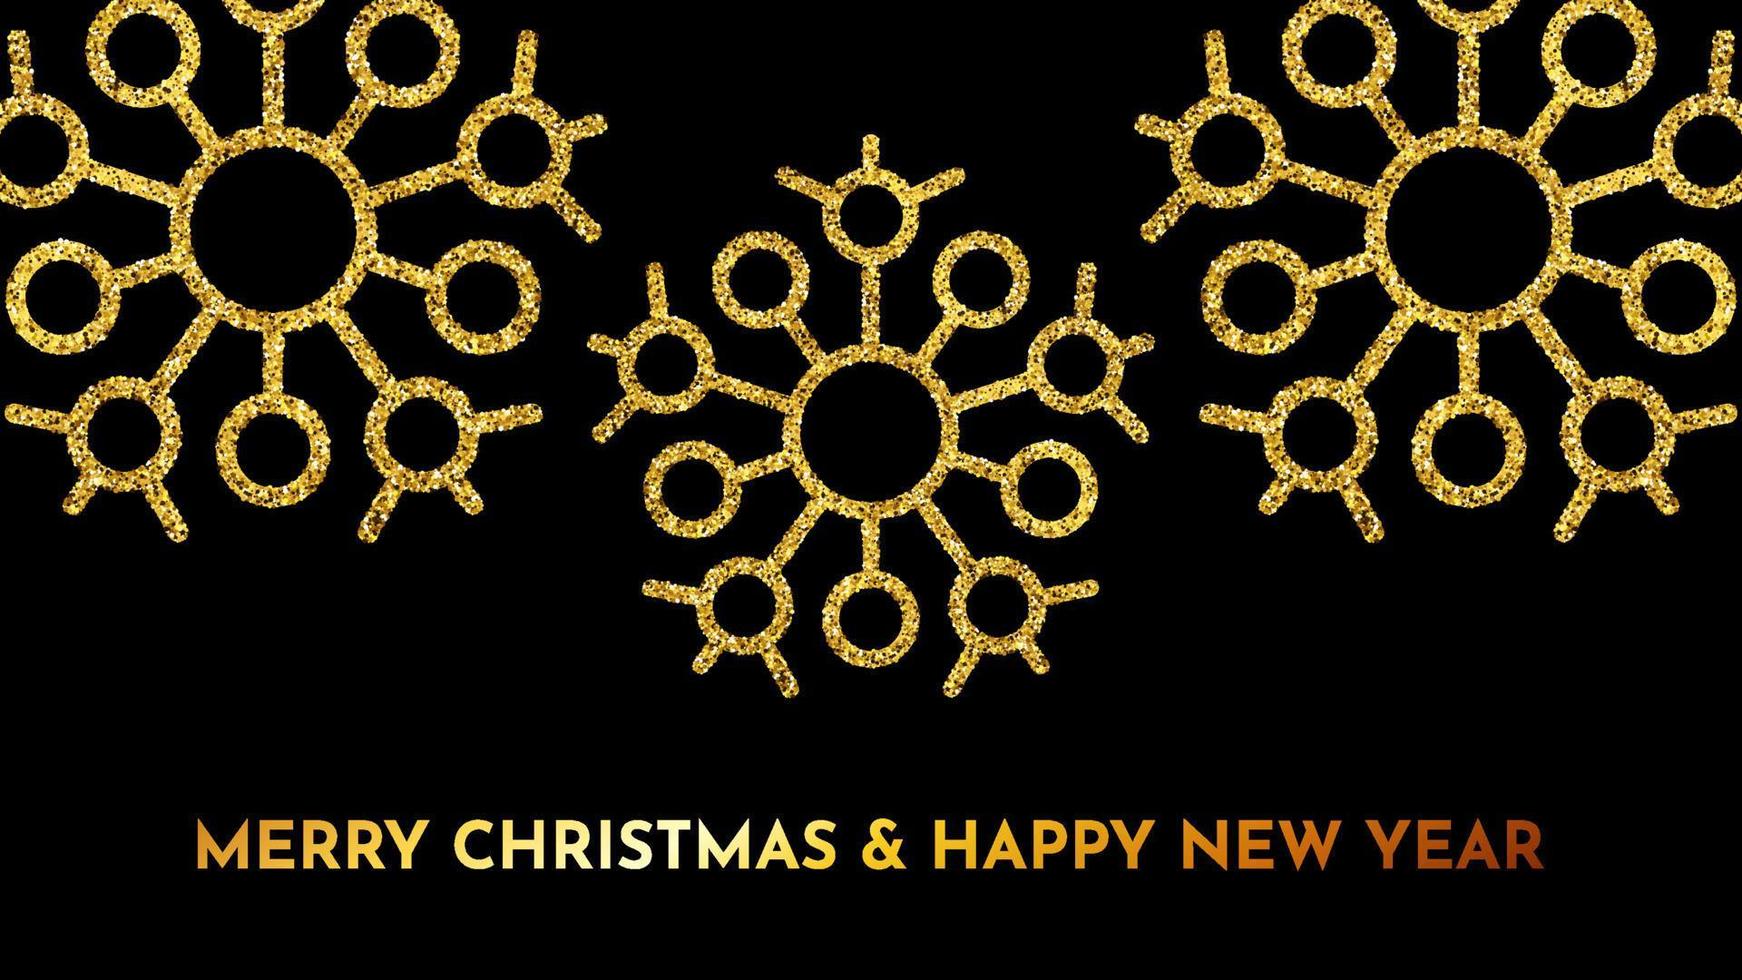 fundo escuro de natal com flocos de neve de glitter dourados. decoração de férias de floco de neve de ano novo. ilustração vetorial vetor